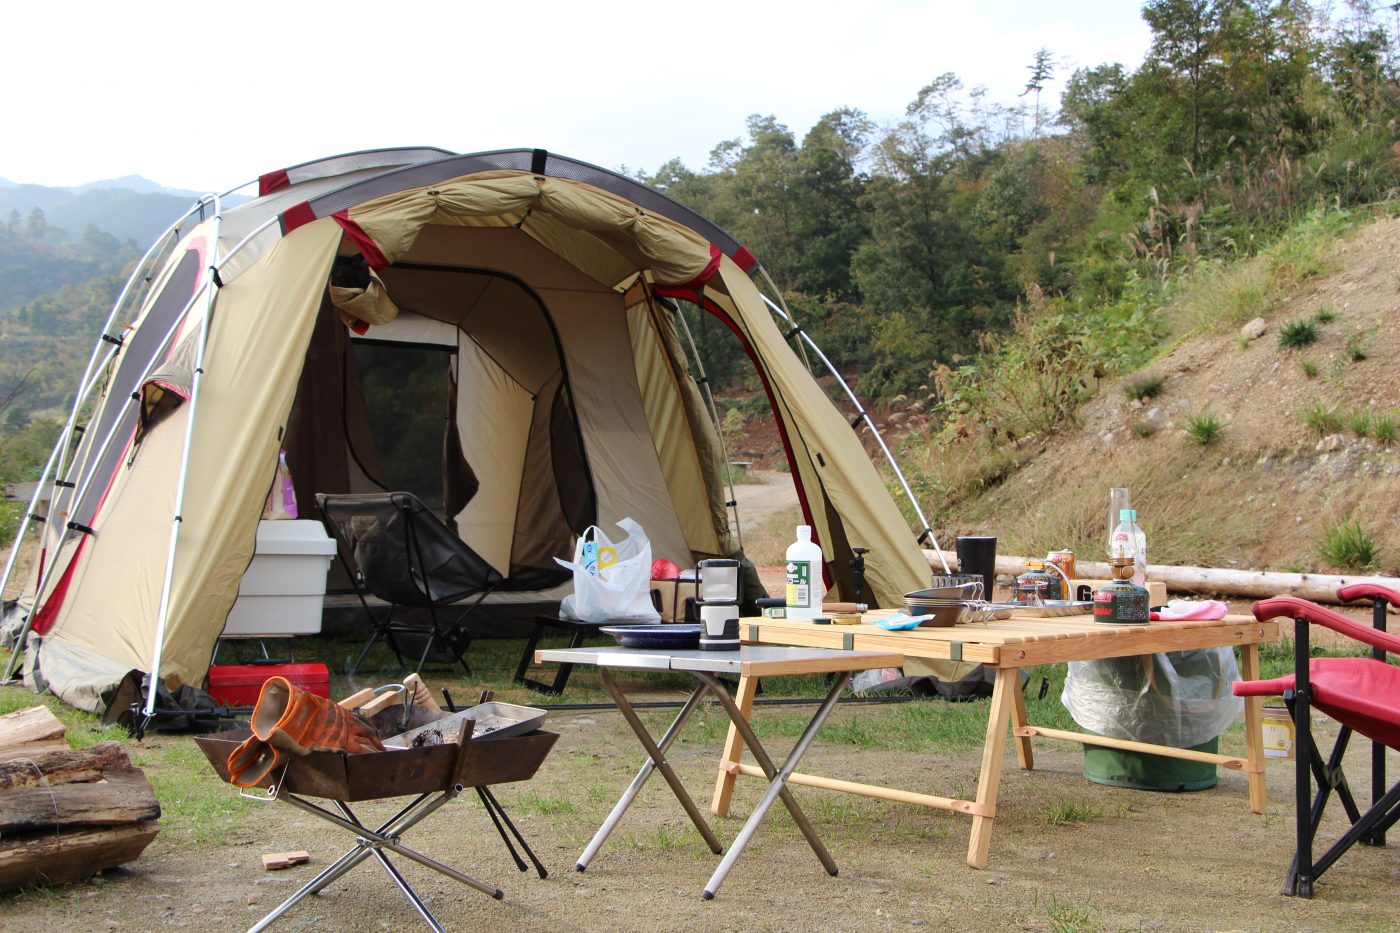 【レビュー】キャンパルジャパンの2ルームテント.シュナーベル5を紹介。 | キャンプ初心者向け総合情報ブログ Hyper Camp Creators